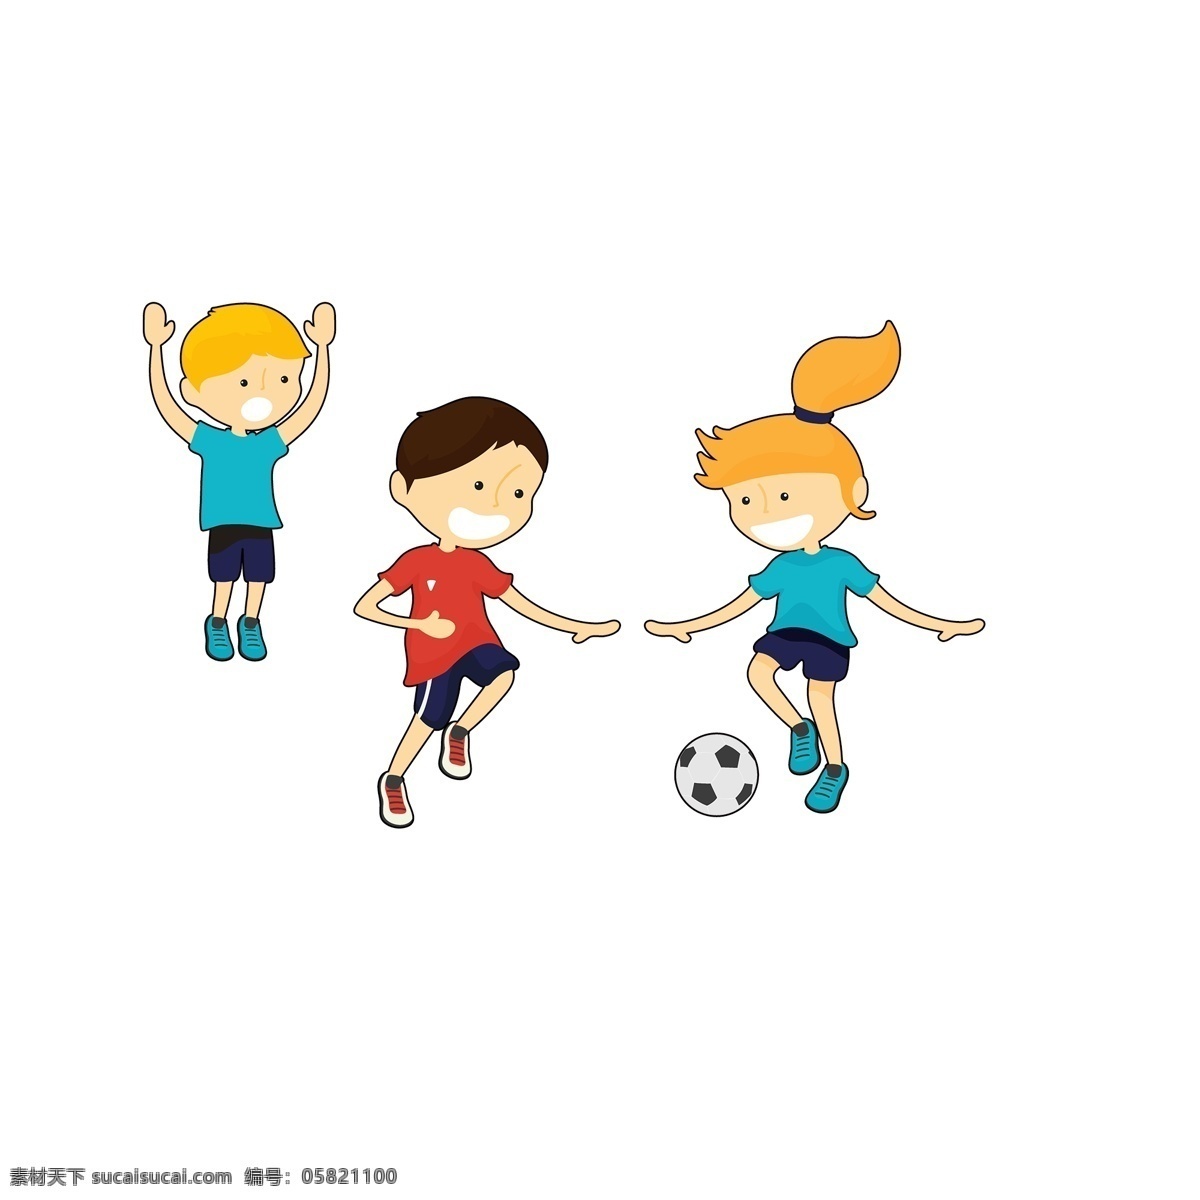 一群 踢 足球 小孩 免 扣 图 可爱的小男孩 免扣图 卡通 男孩免扣图 女孩 踢球 踢足球的小孩